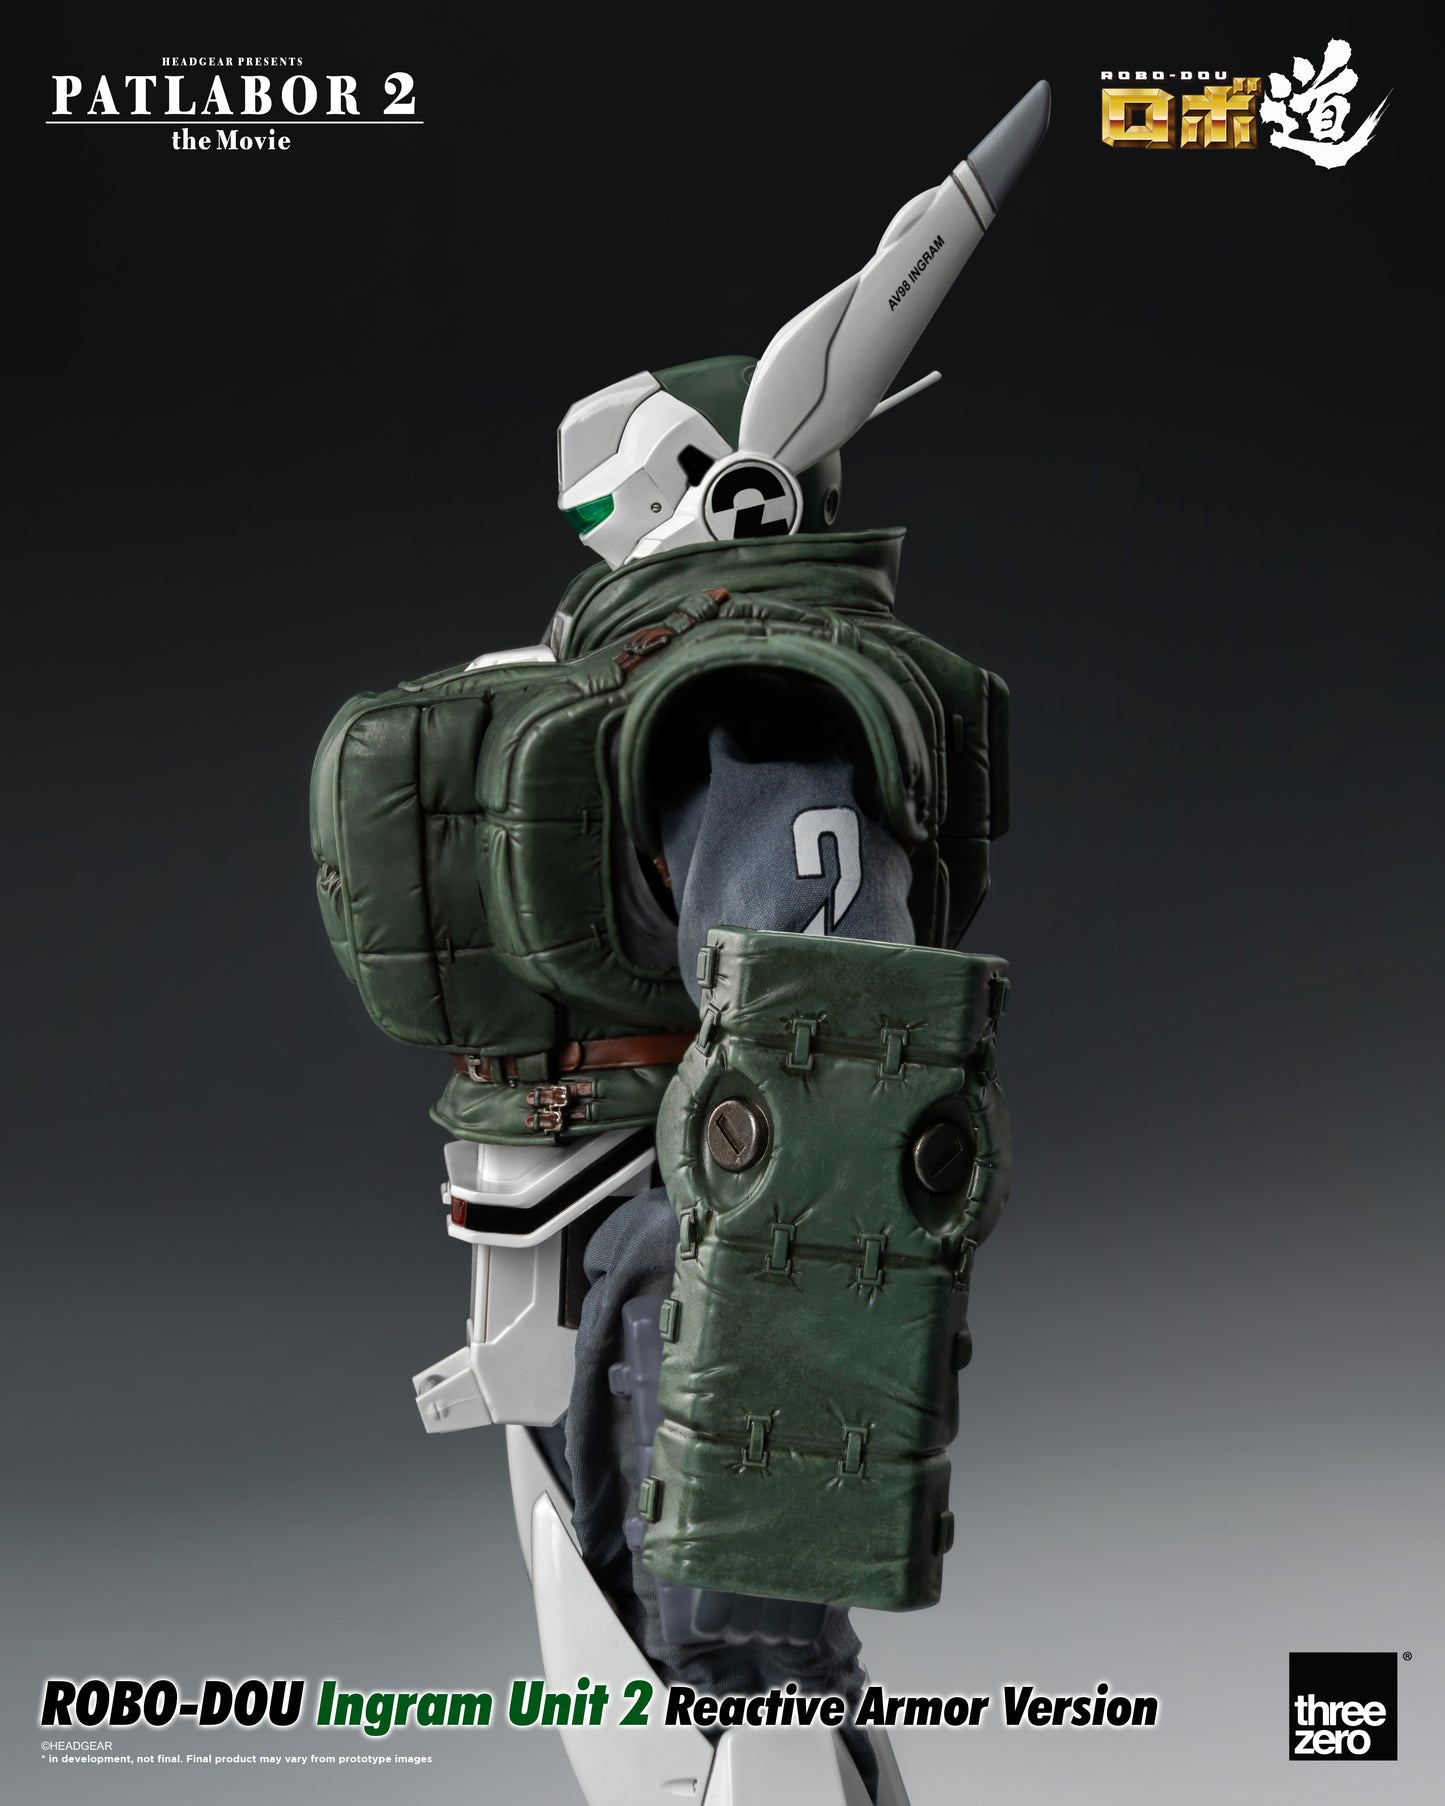 Patlabor 2: The Movie - ROBO-DOU Ingram Unit 2 Reactive Armor Version left side view